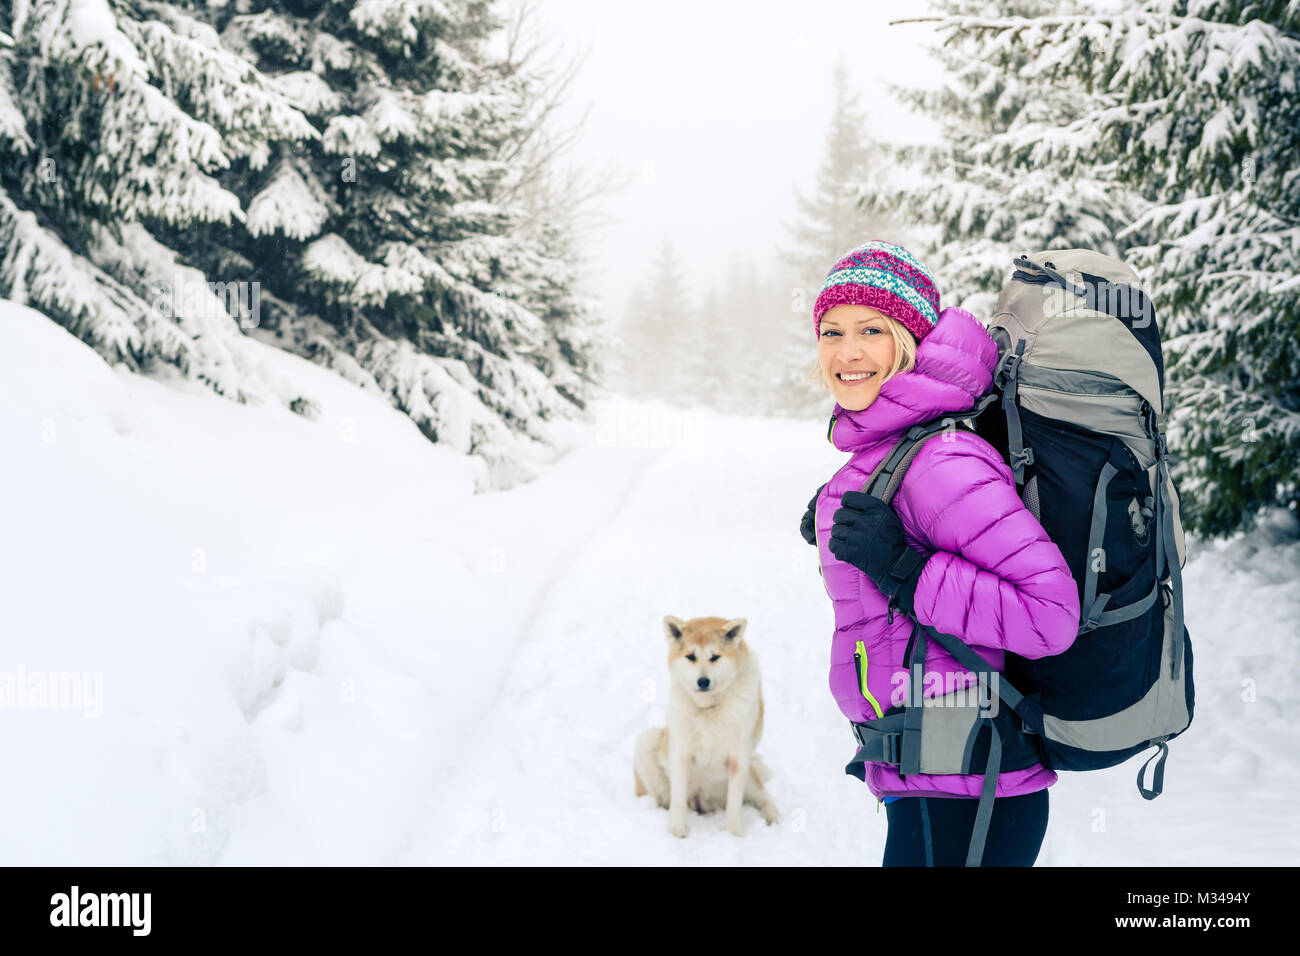 Frau wandern in weiss Winter Forest Woods mit Akita Hund. Erholung Fitness und gesunde Lebensweise draussen in der Natur. Motivation und Inspiration wi Stockfoto